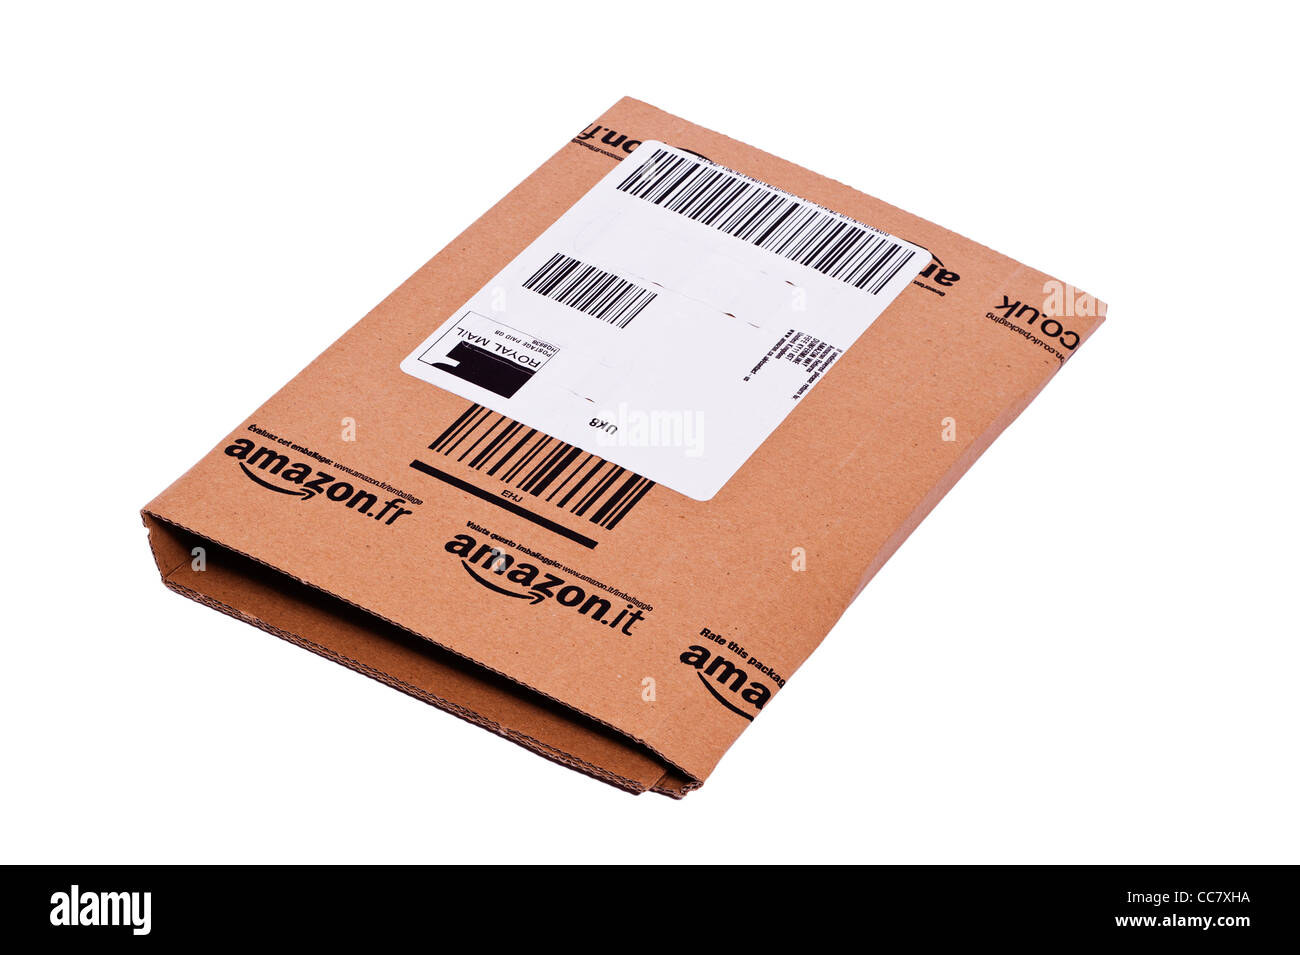 Un pacchetto pacco da Amazon shopping online fornito da Royal Mail su sfondo bianco Foto Stock